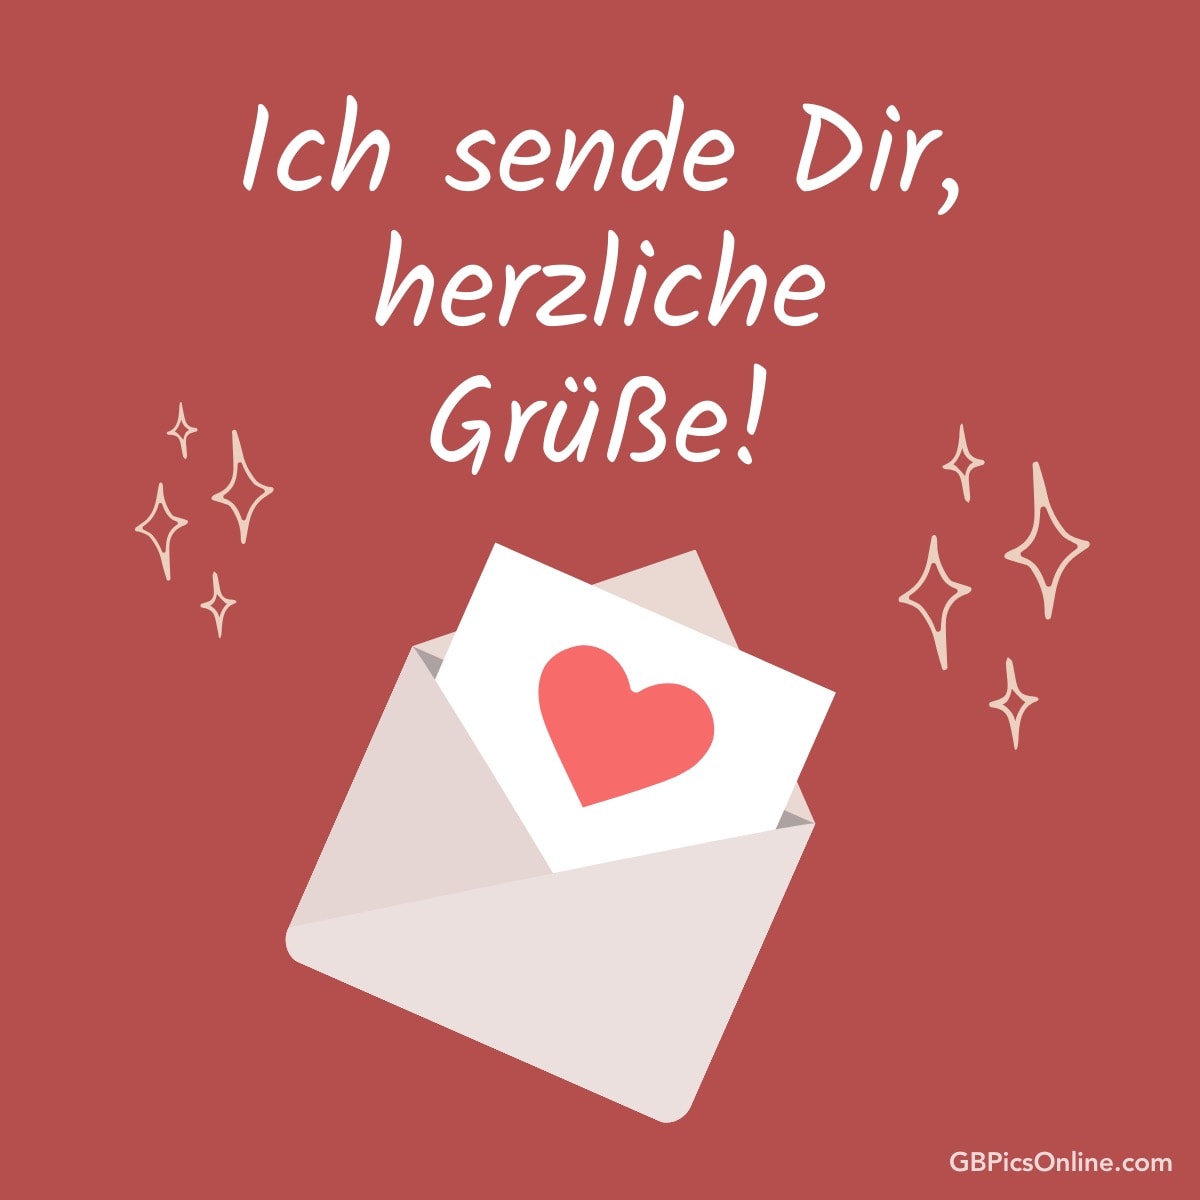 Ein Umschlag mit einem Herz, umgeben von Sternen, und der Text „Ich sende Dir, herzliche Grüße!“